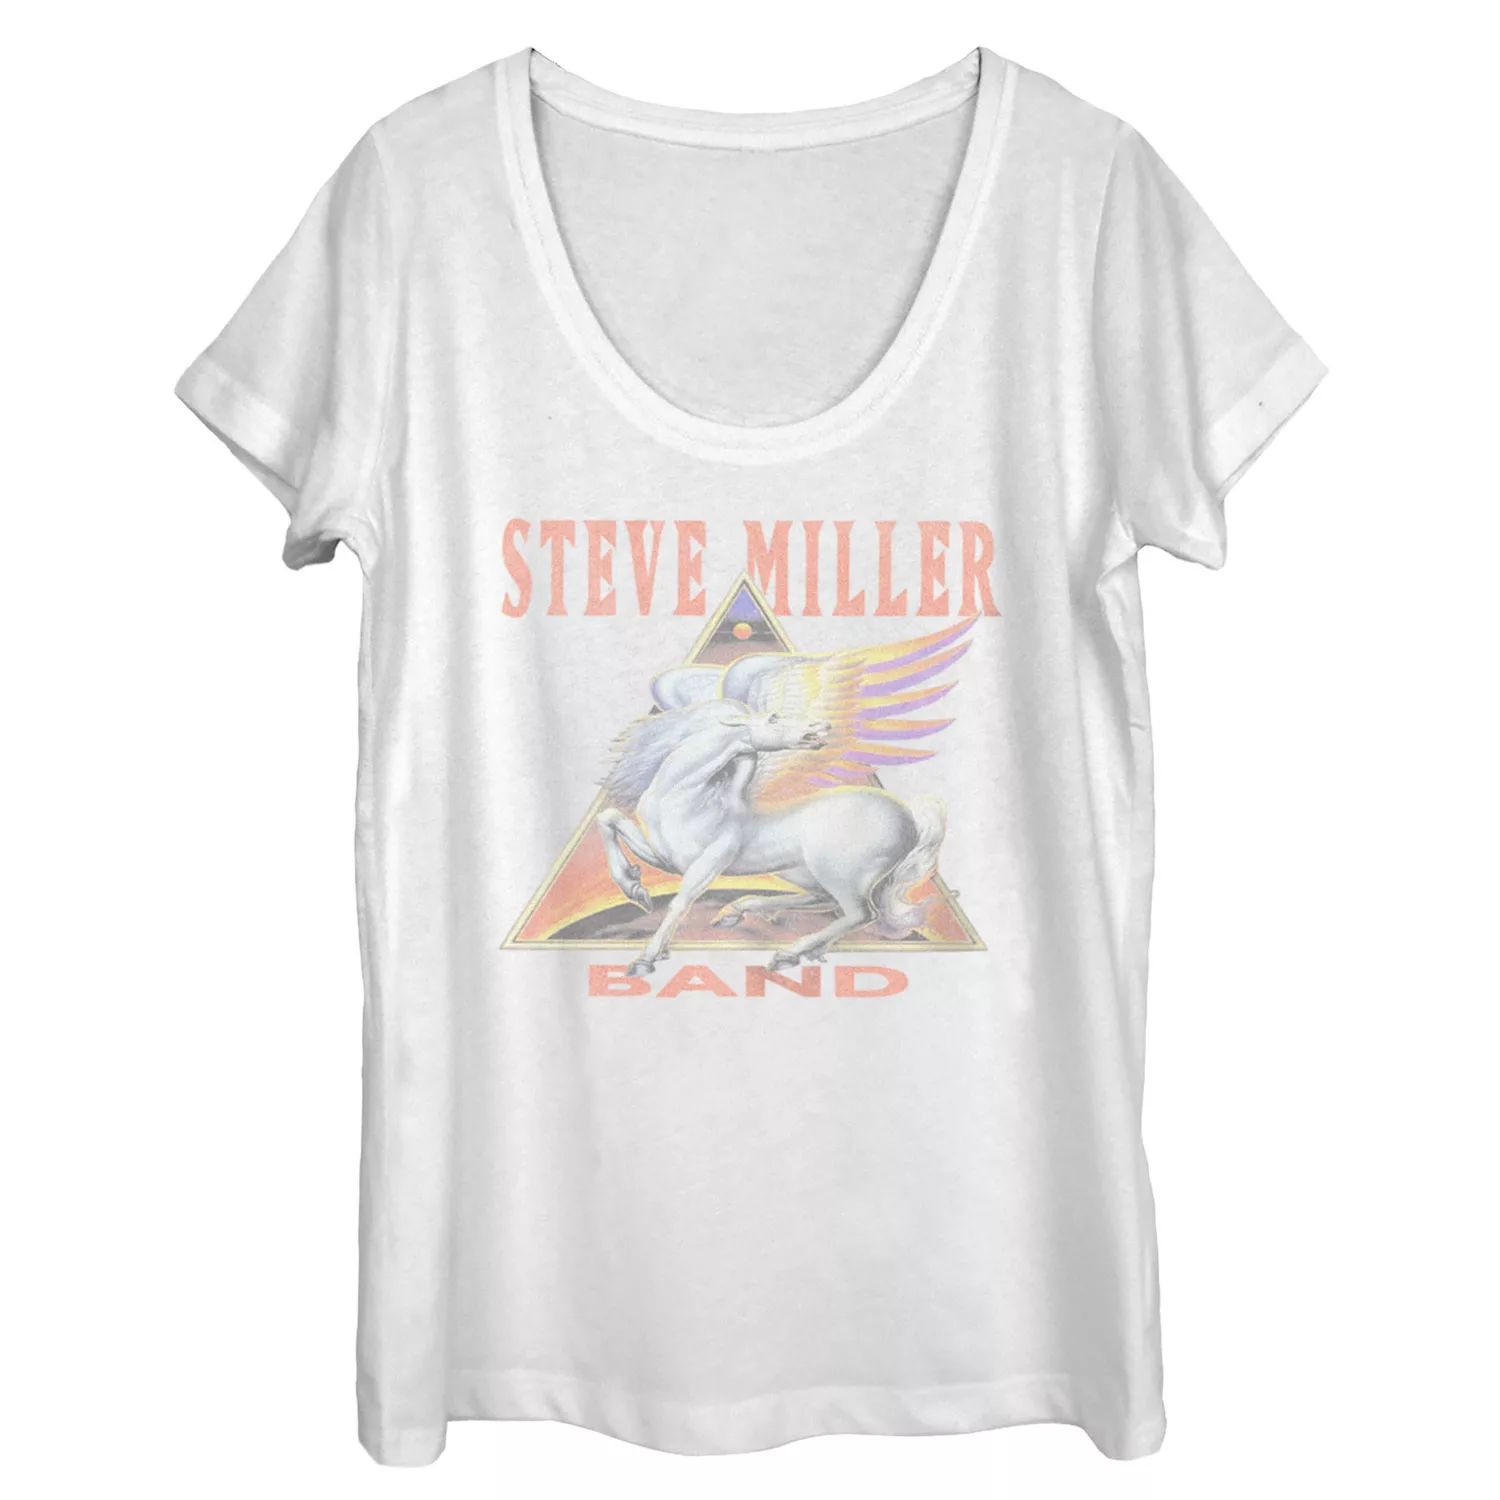 Юниорская футболка Steve Miller Band Pegasus с треугольным логотипом и графическим рисунком Licensed Character